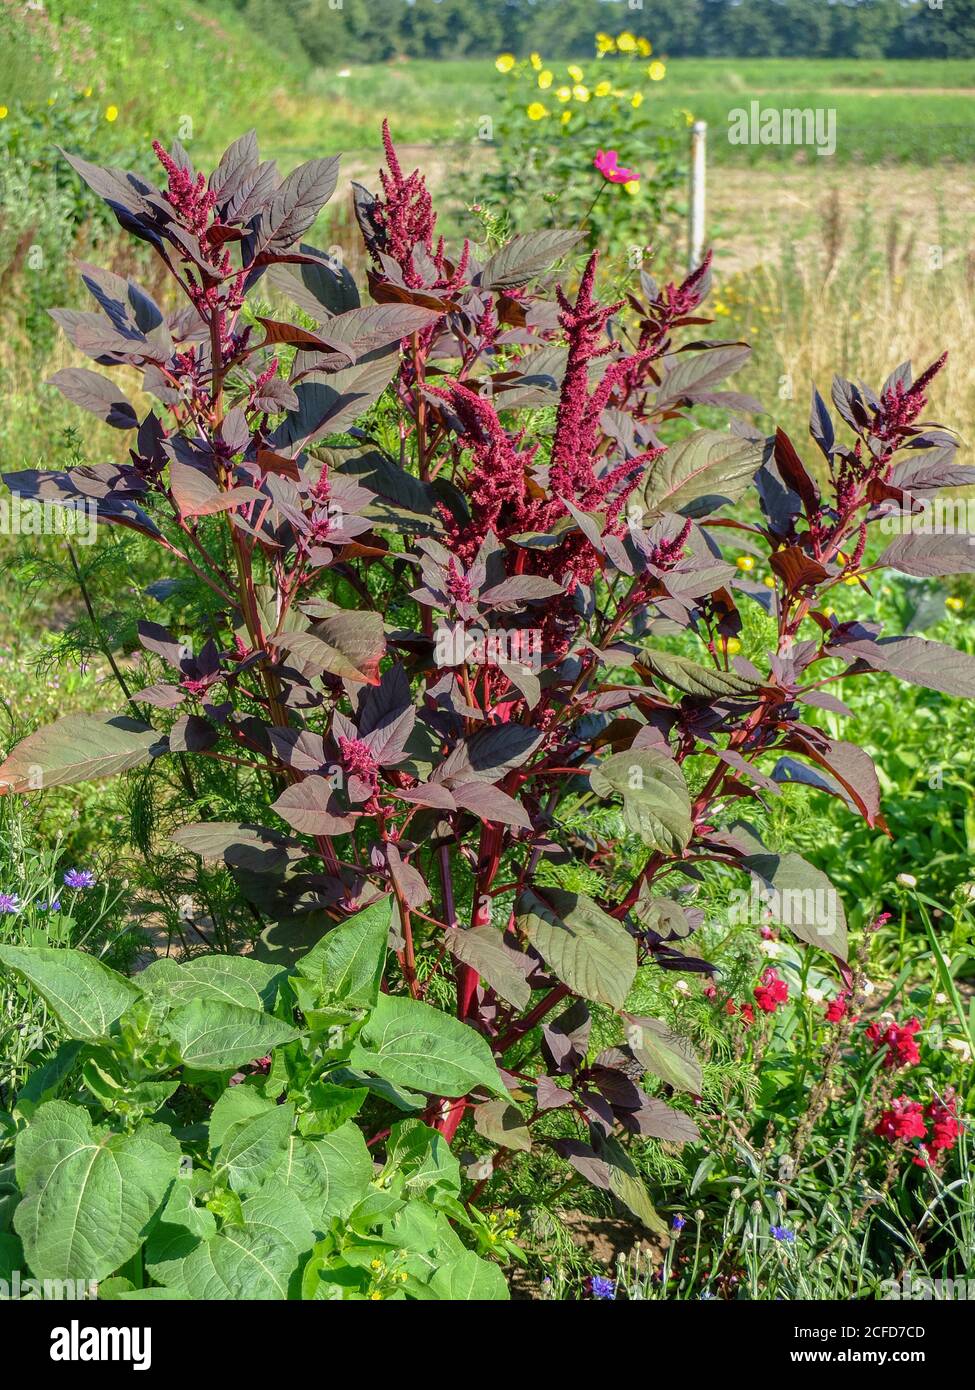 Amaranth vegetal - Cola de hojas rojas (Amaranthus) crece en el jardín Foto de stock